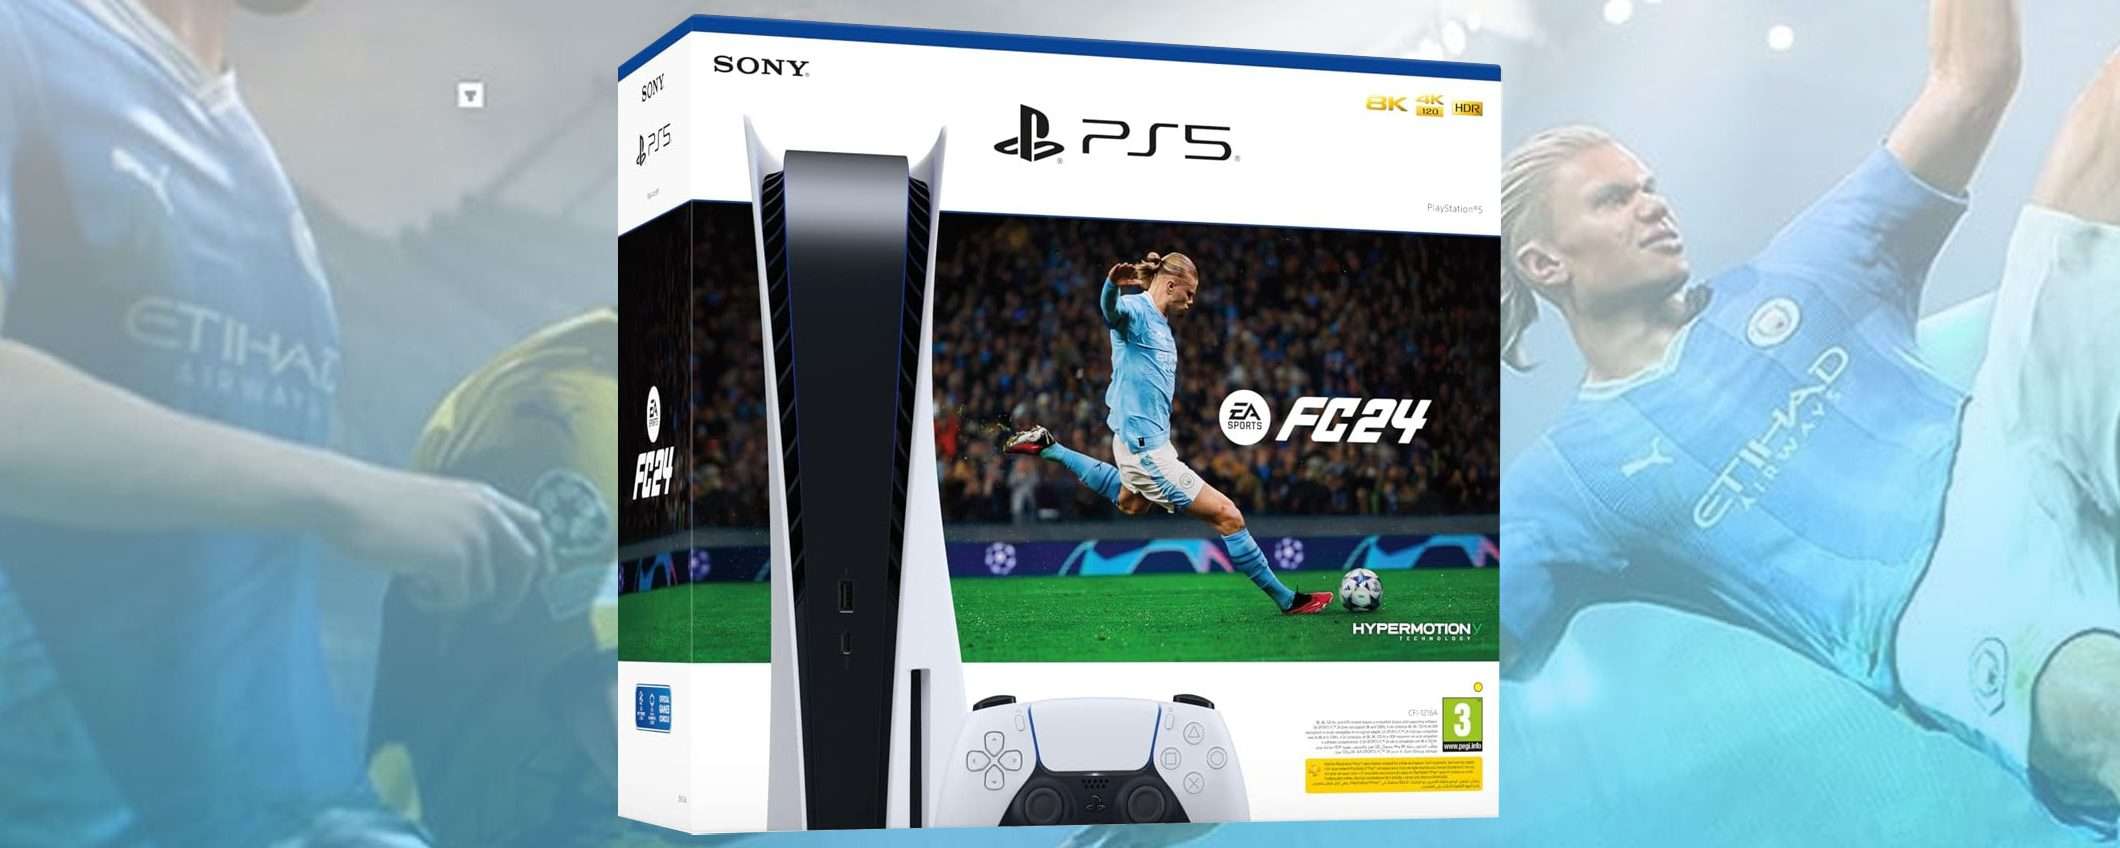 PS5+FC 24: il bundle di Sony al prezzo minimo